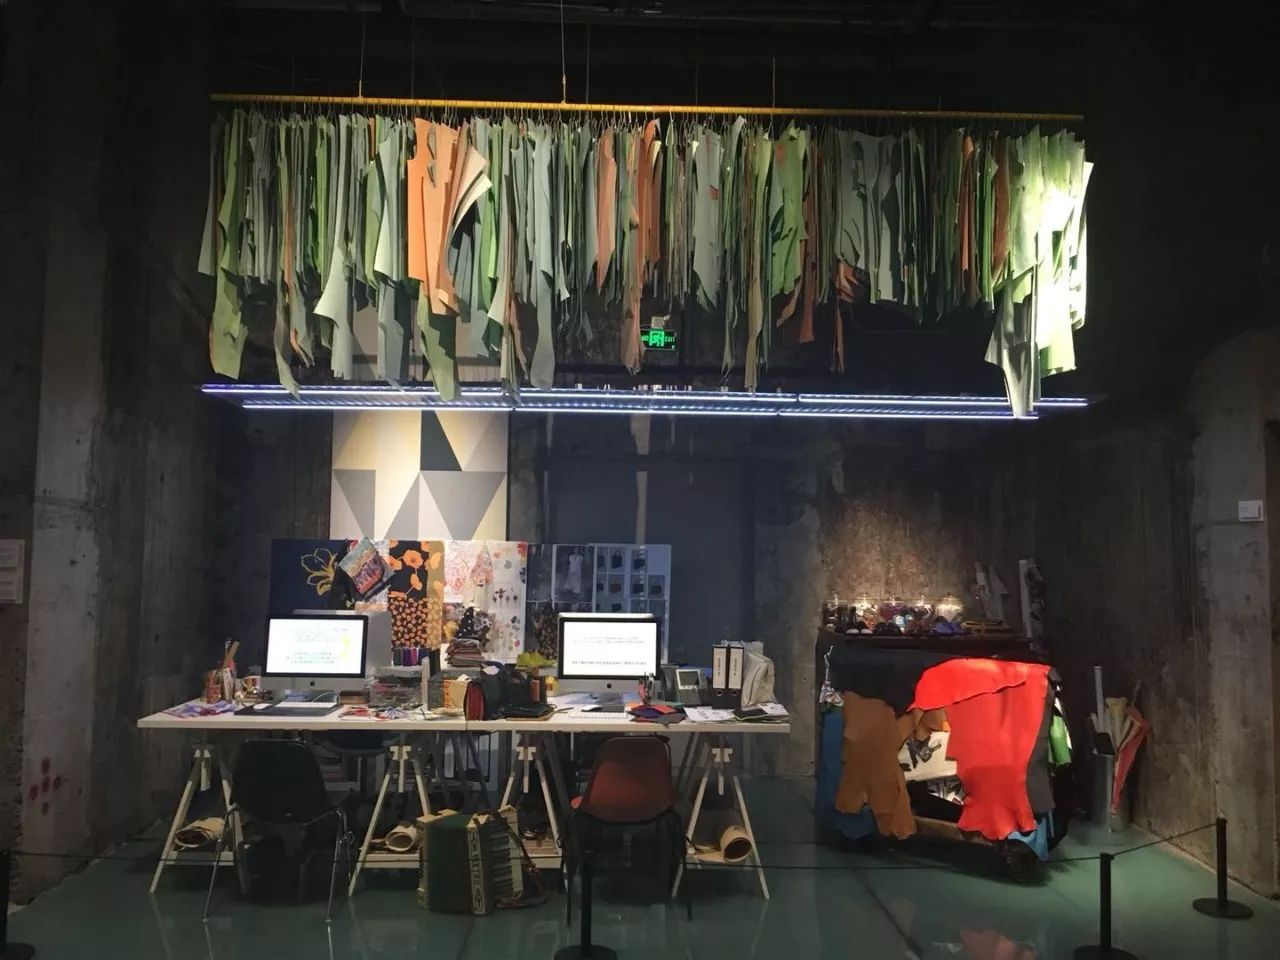 在他的工作室中,堆满了各种布料,样品,那些充满创意的服装,都从这里